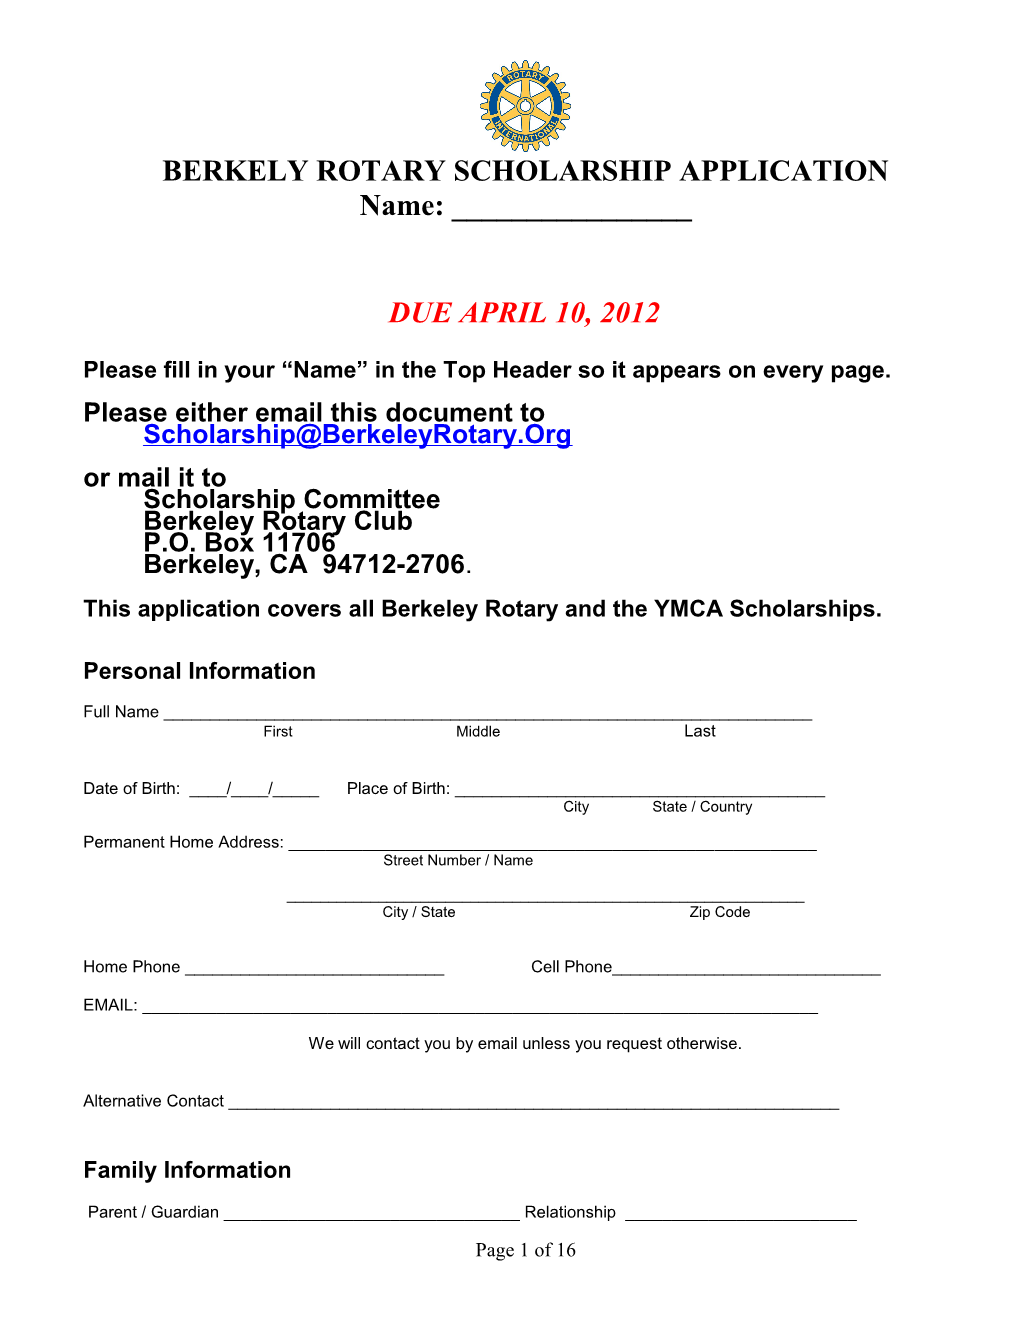 Berkely Rotary Scholarship Application